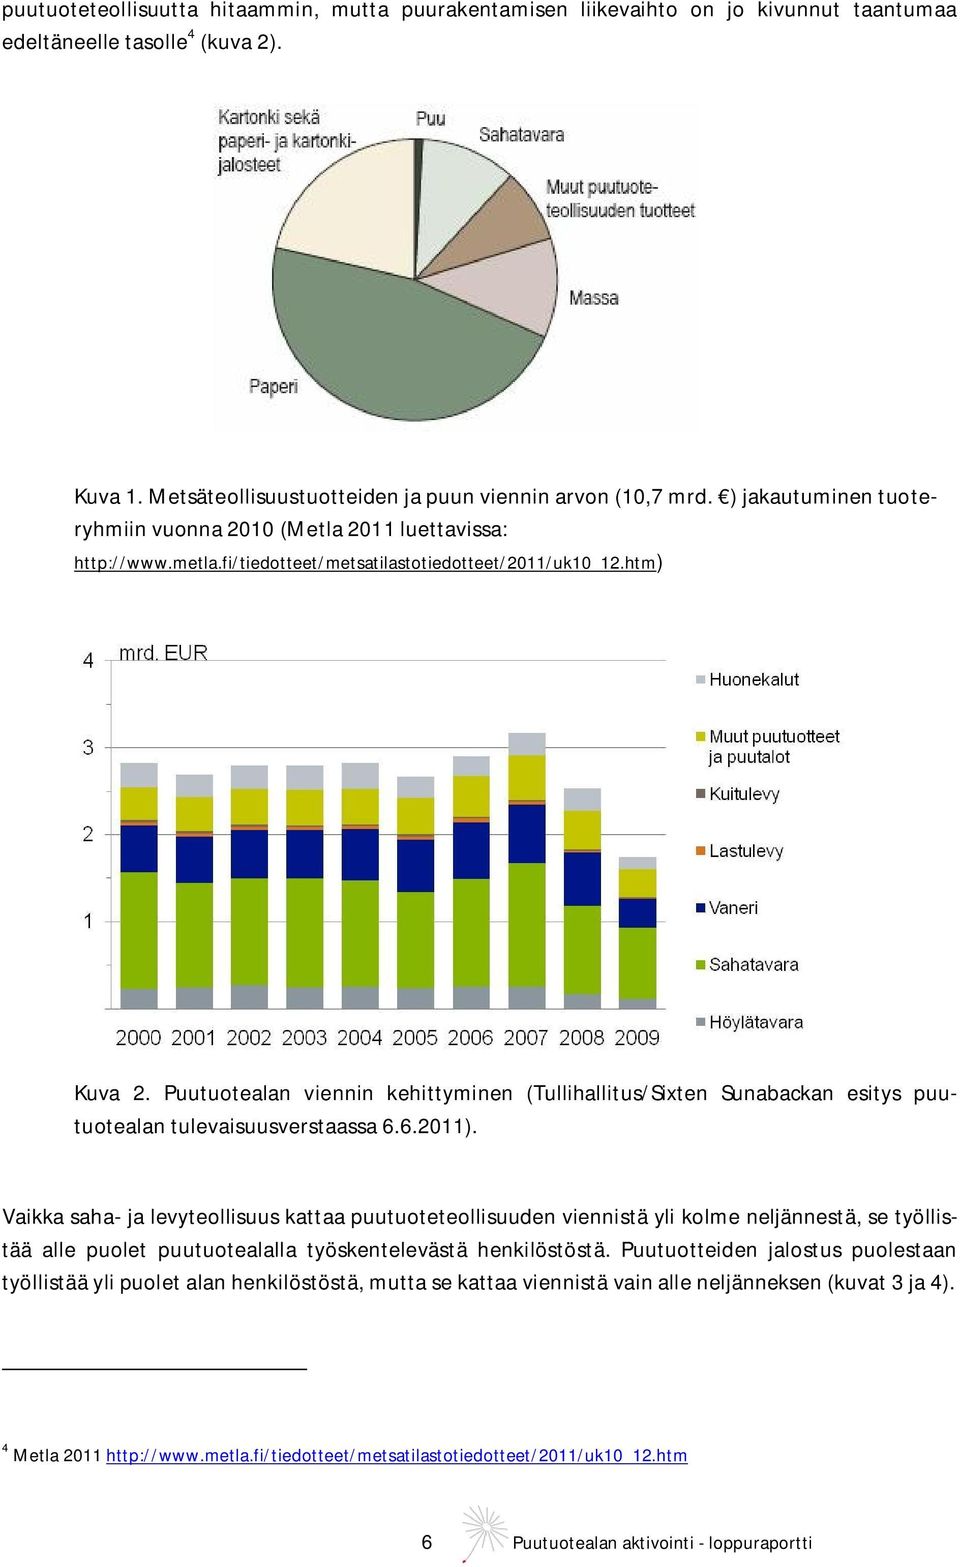 Puutuotealan viennin kehittyminen (Tullihallitus/Sixten Sunabackan esitys puutuotealan tulevaisuusverstaassa 6.6.2011).